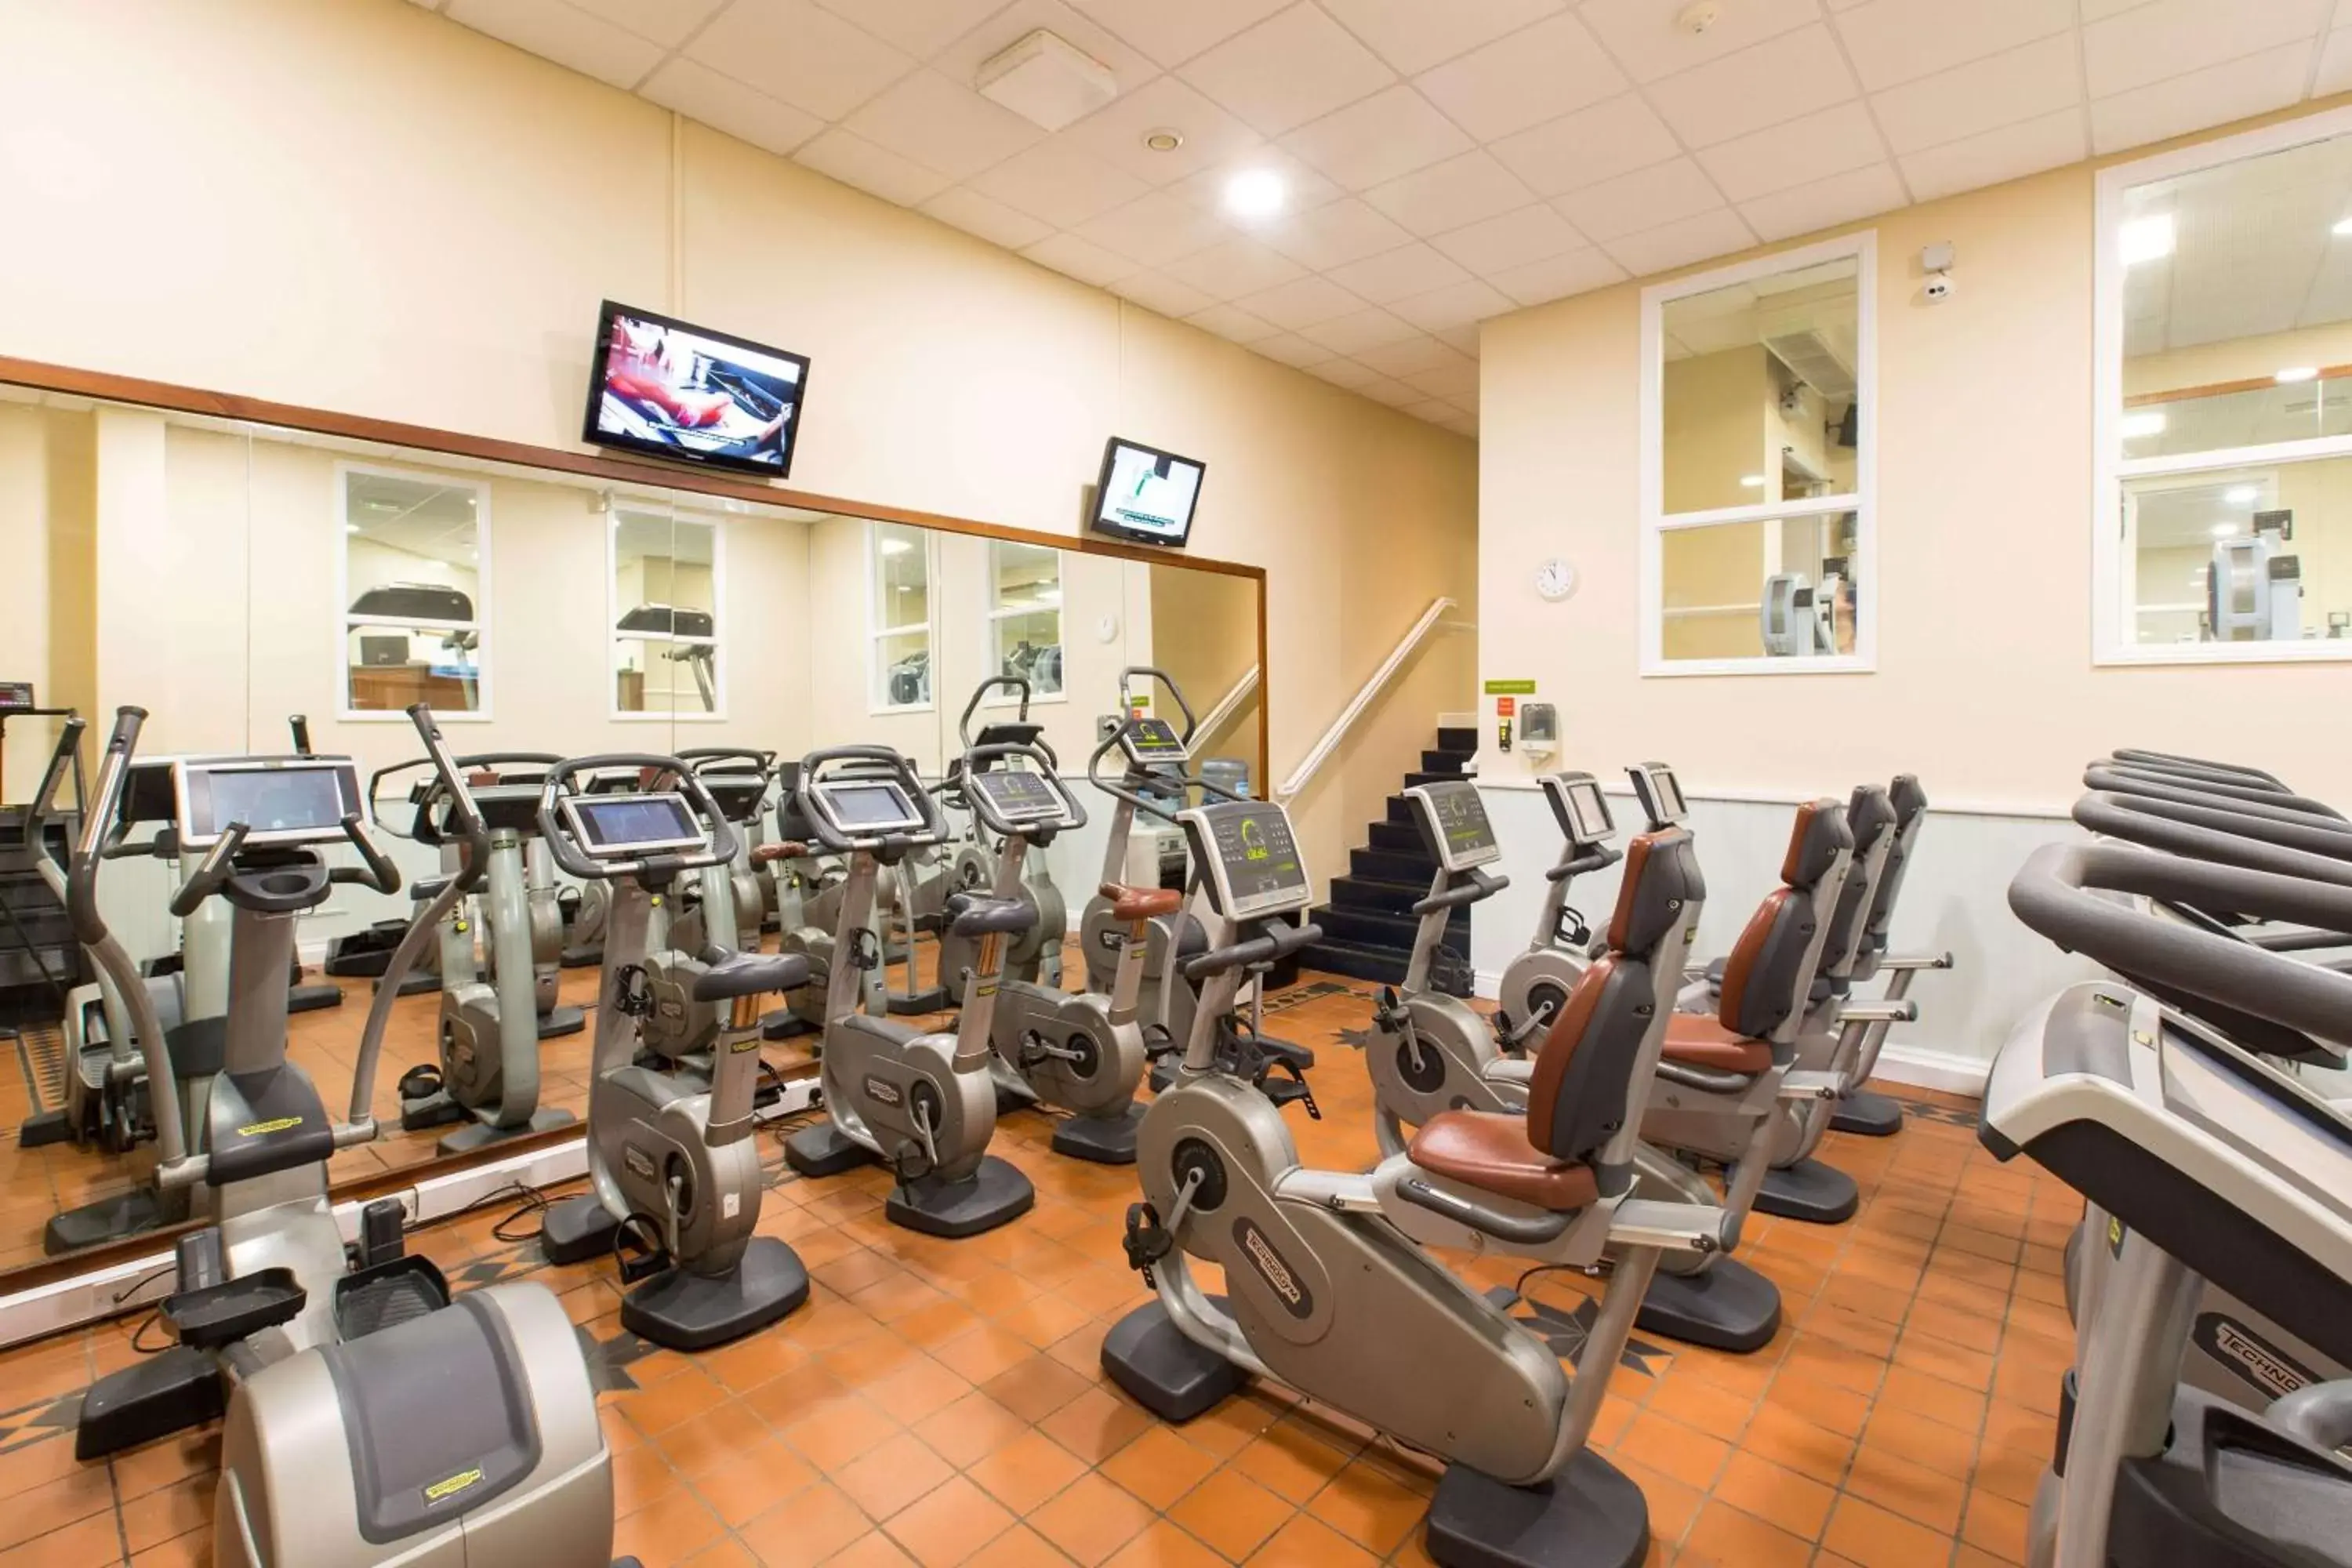 Fitness centre/facilities, Fitness Center/Facilities in Dunston Hall Hotel, Spa & Golf Resort